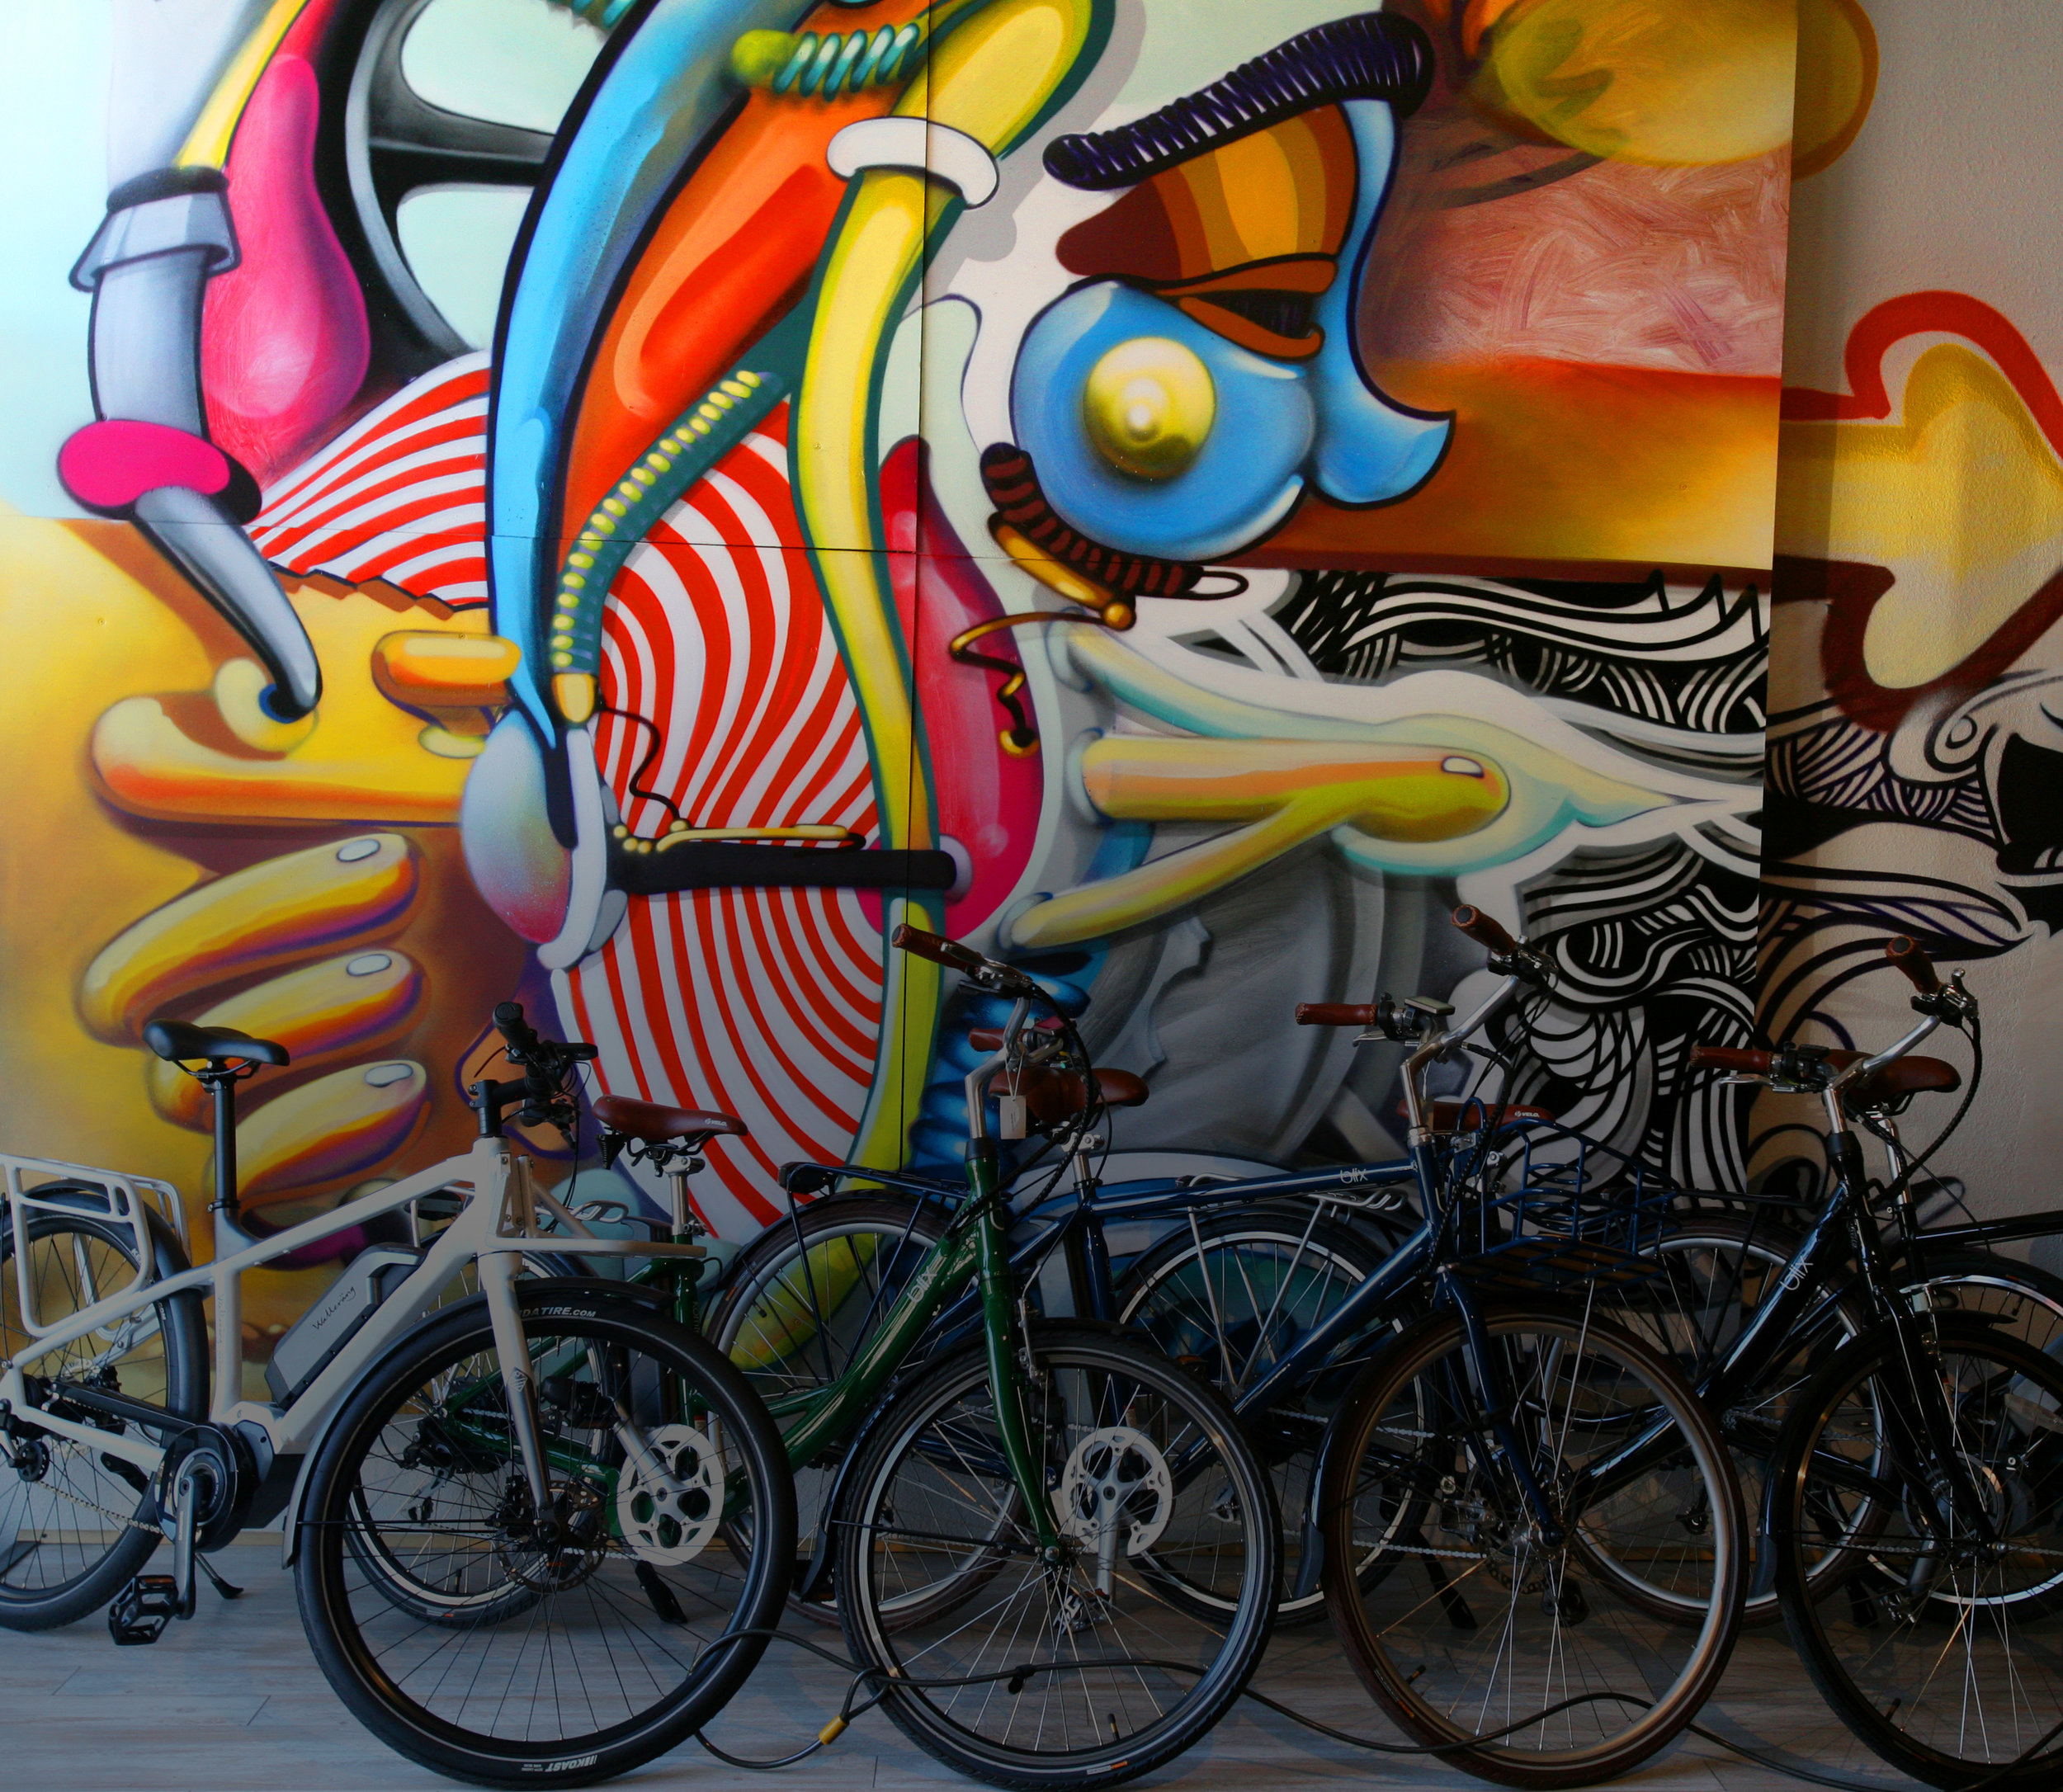 velocipede bicycle shop